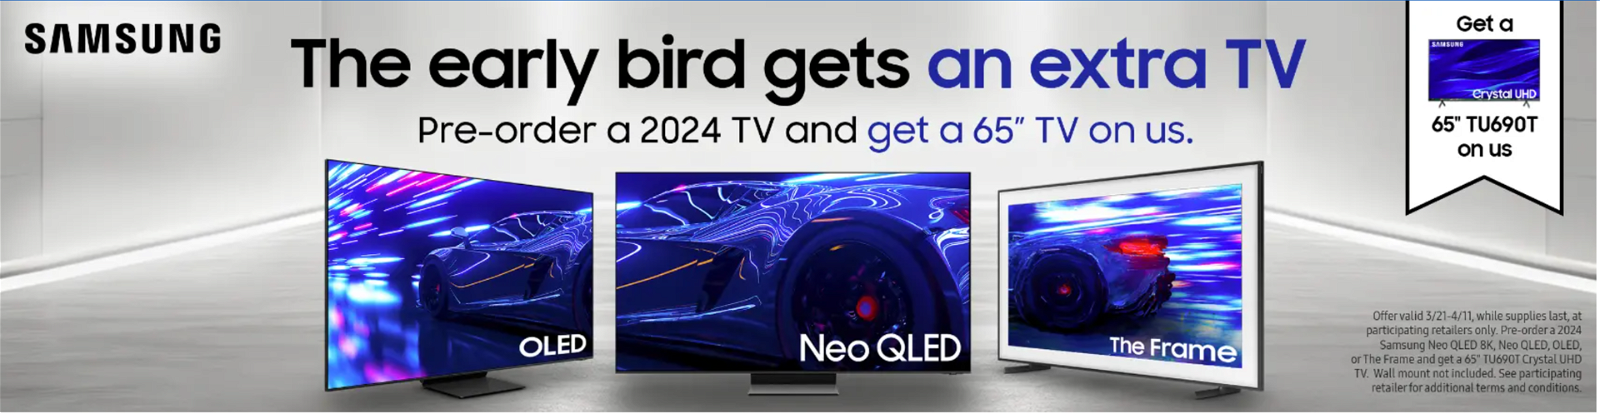 Samsung TV Pre-Order Offer 